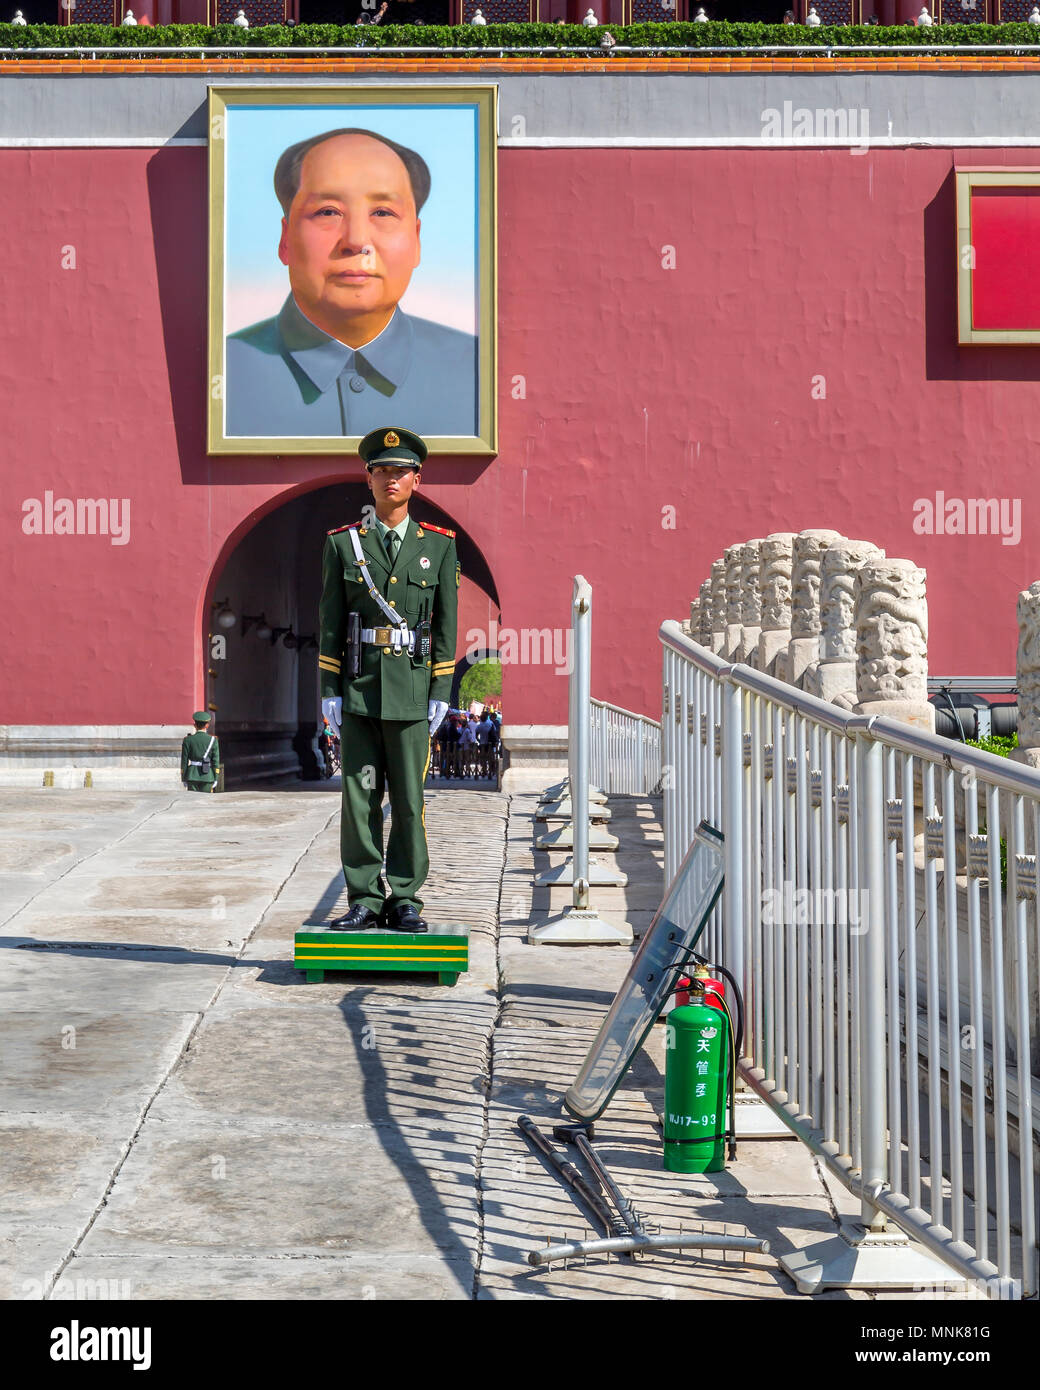 Un soldat chinois monte la garde sous le portrait de Mao Zedong à la porte Tiananmen, Beijing, Chine. Son bouclier anti-émeute s'appuie contre la rambarde. Banque D'Images